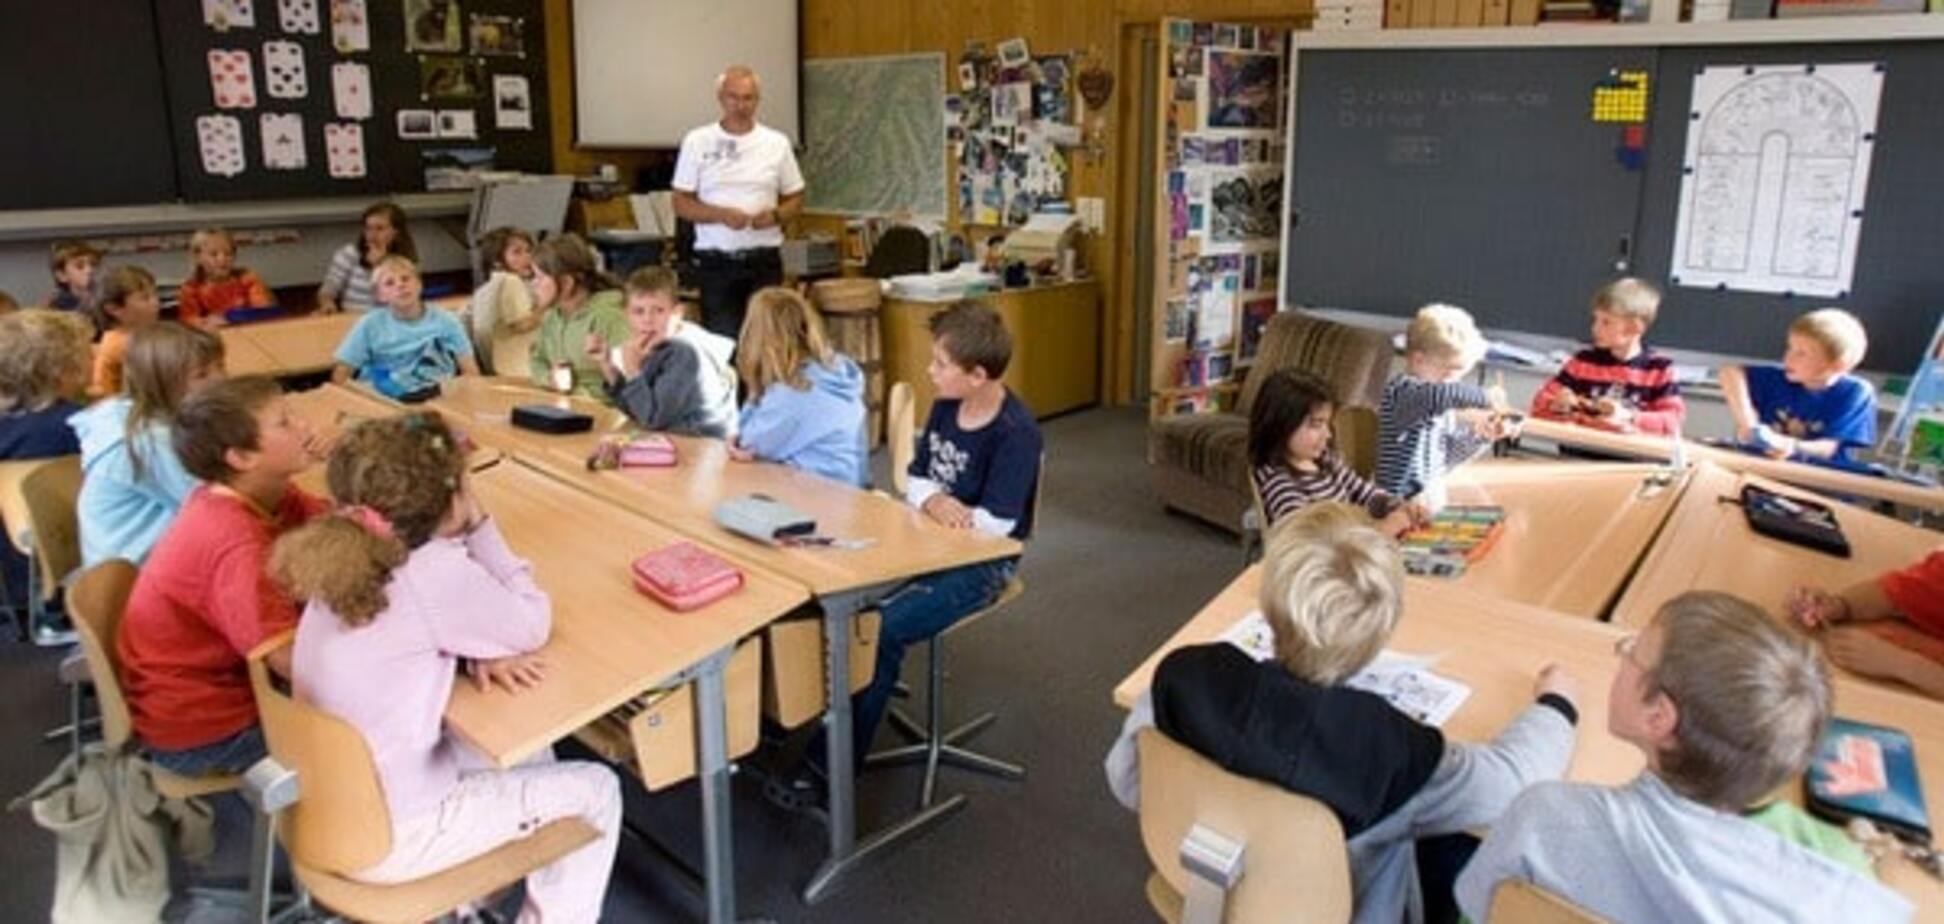 Швейцарская школа: учителя играют с учениками в футбол и пишут письма